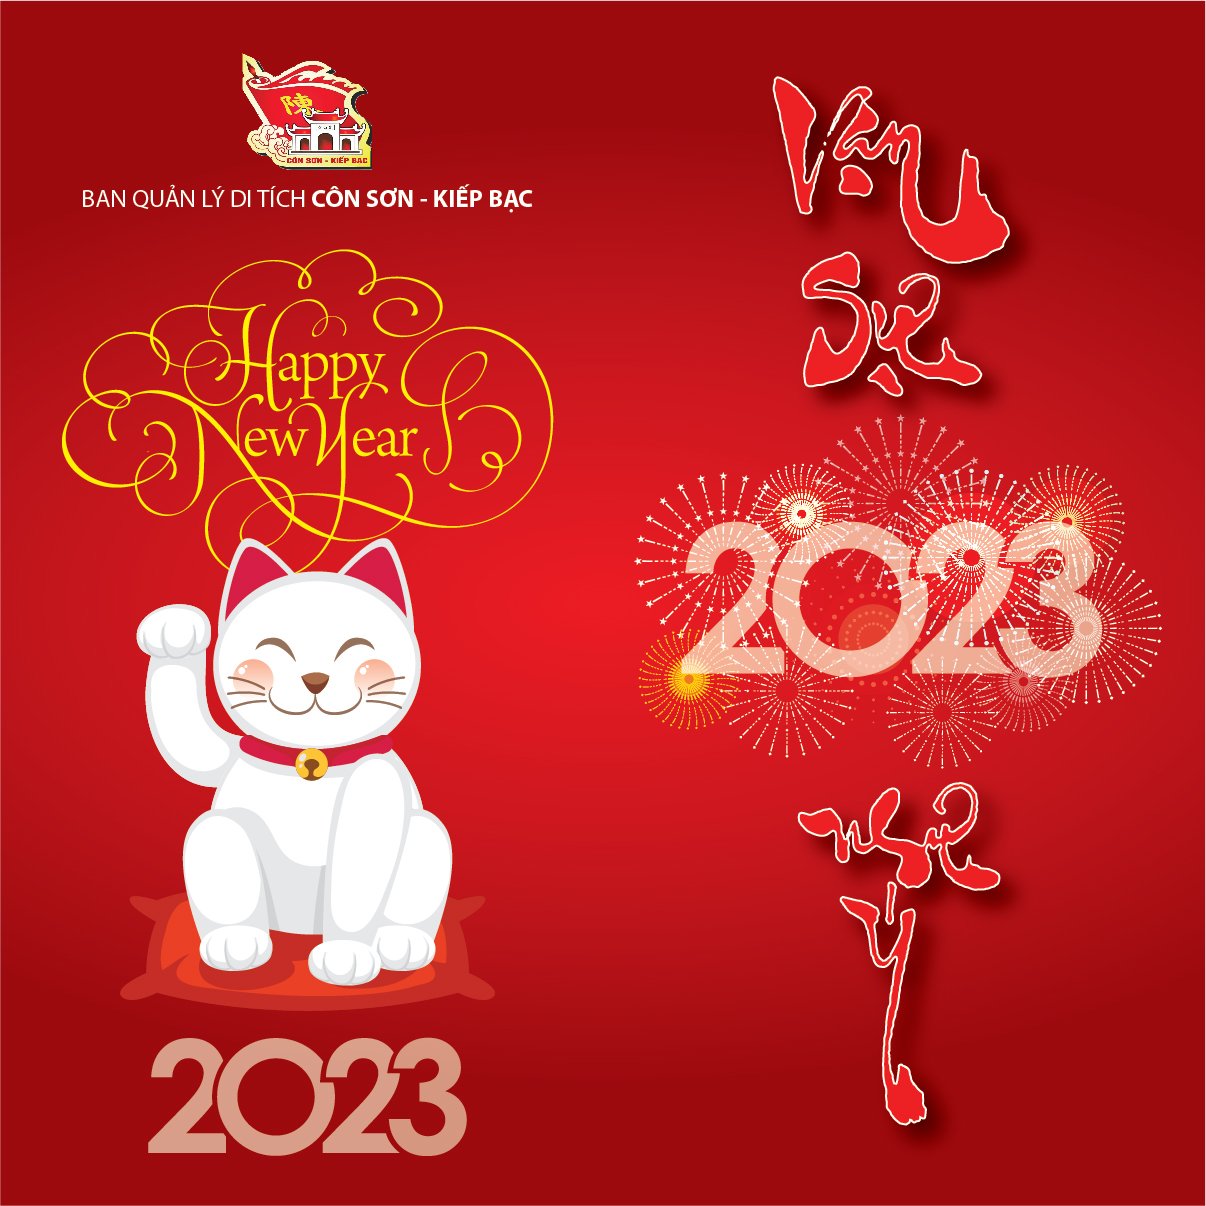 99 Thiệp chúc tết 2023 đẹp nhất dành tặng người thân | Thiệp, Chúc mừng năm  mới, Chúc mừng